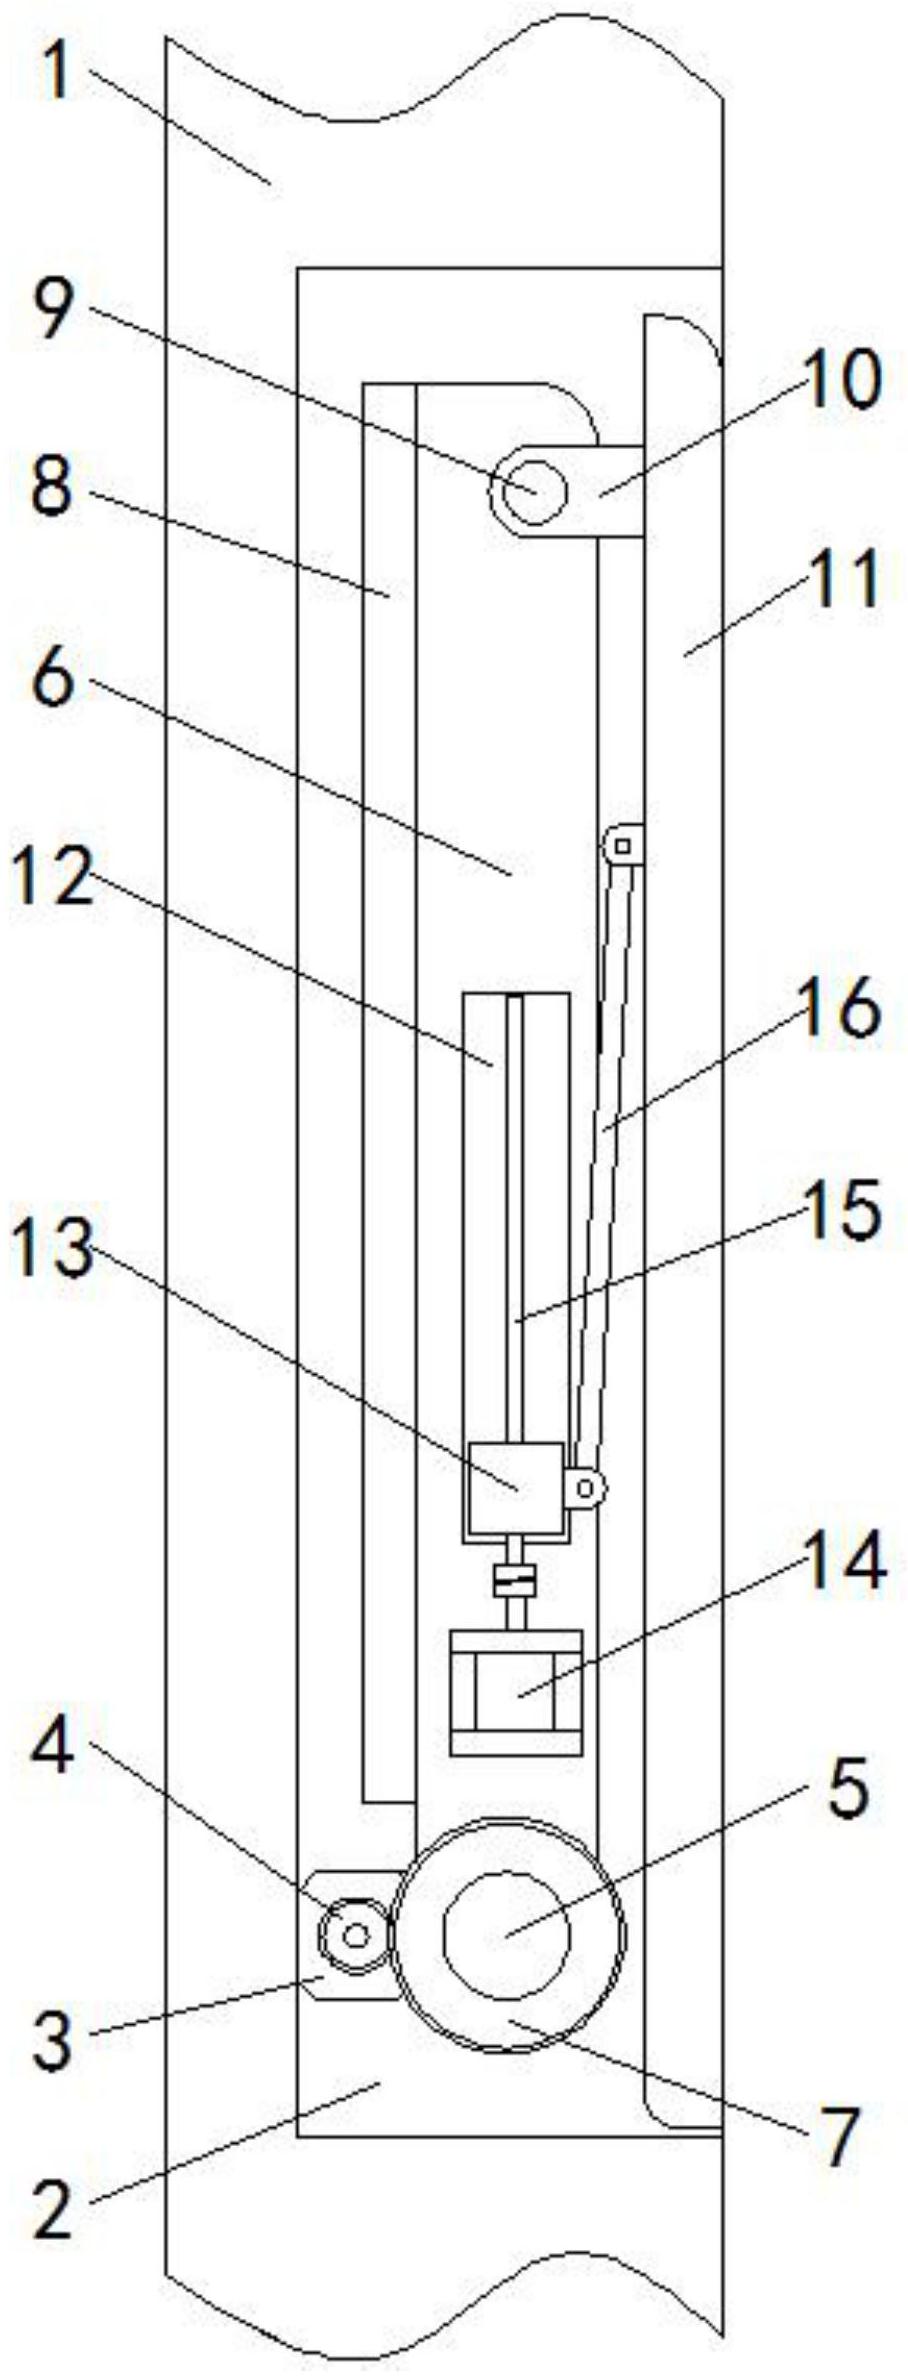 一种内嵌折叠马扎的智能电梯-专利